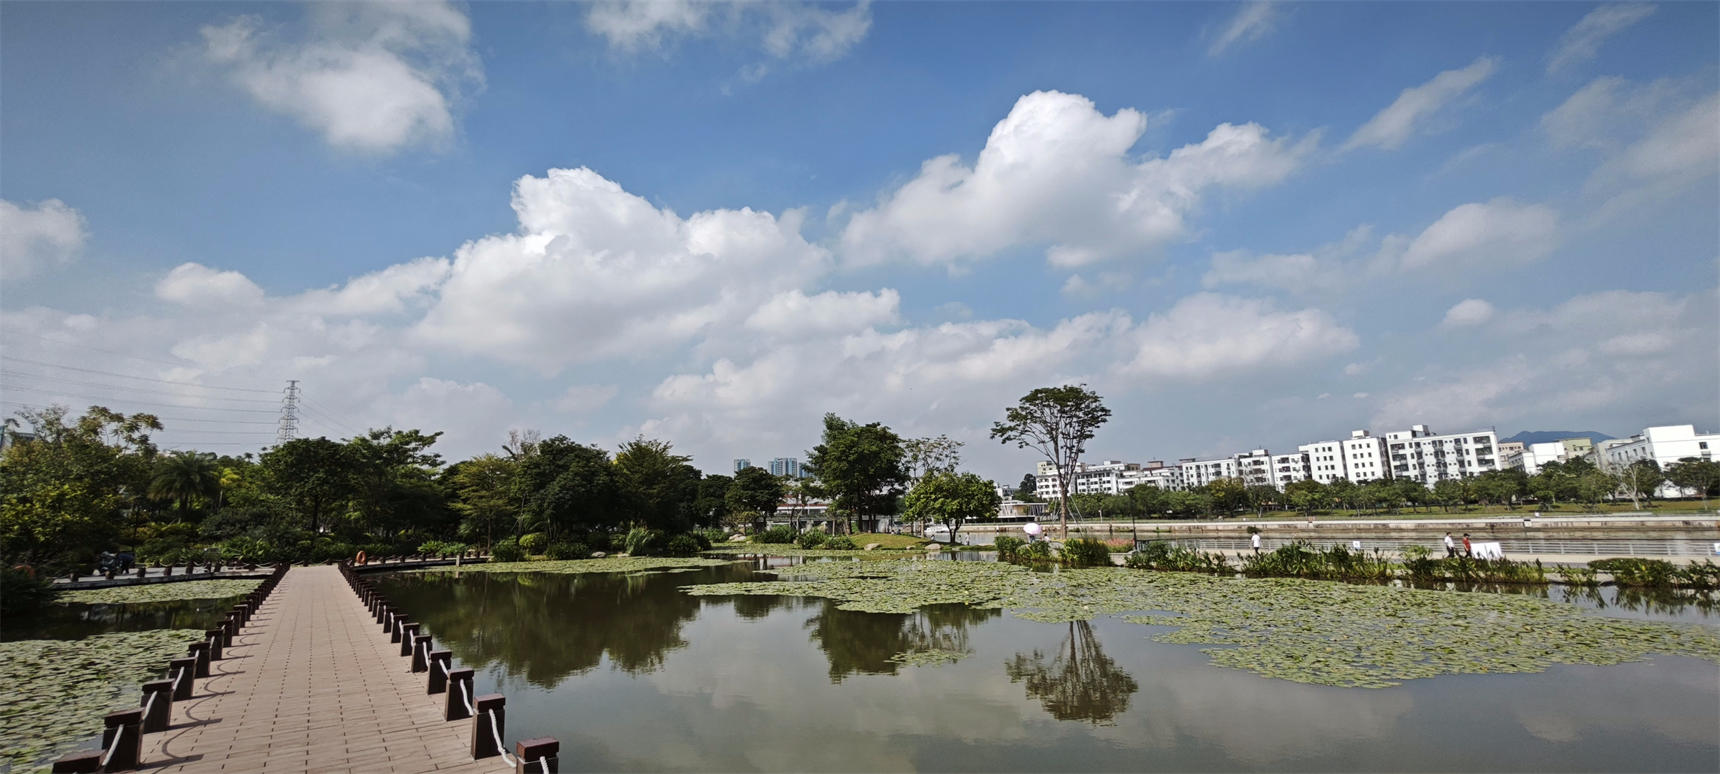 深圳市燕罗湿地公园